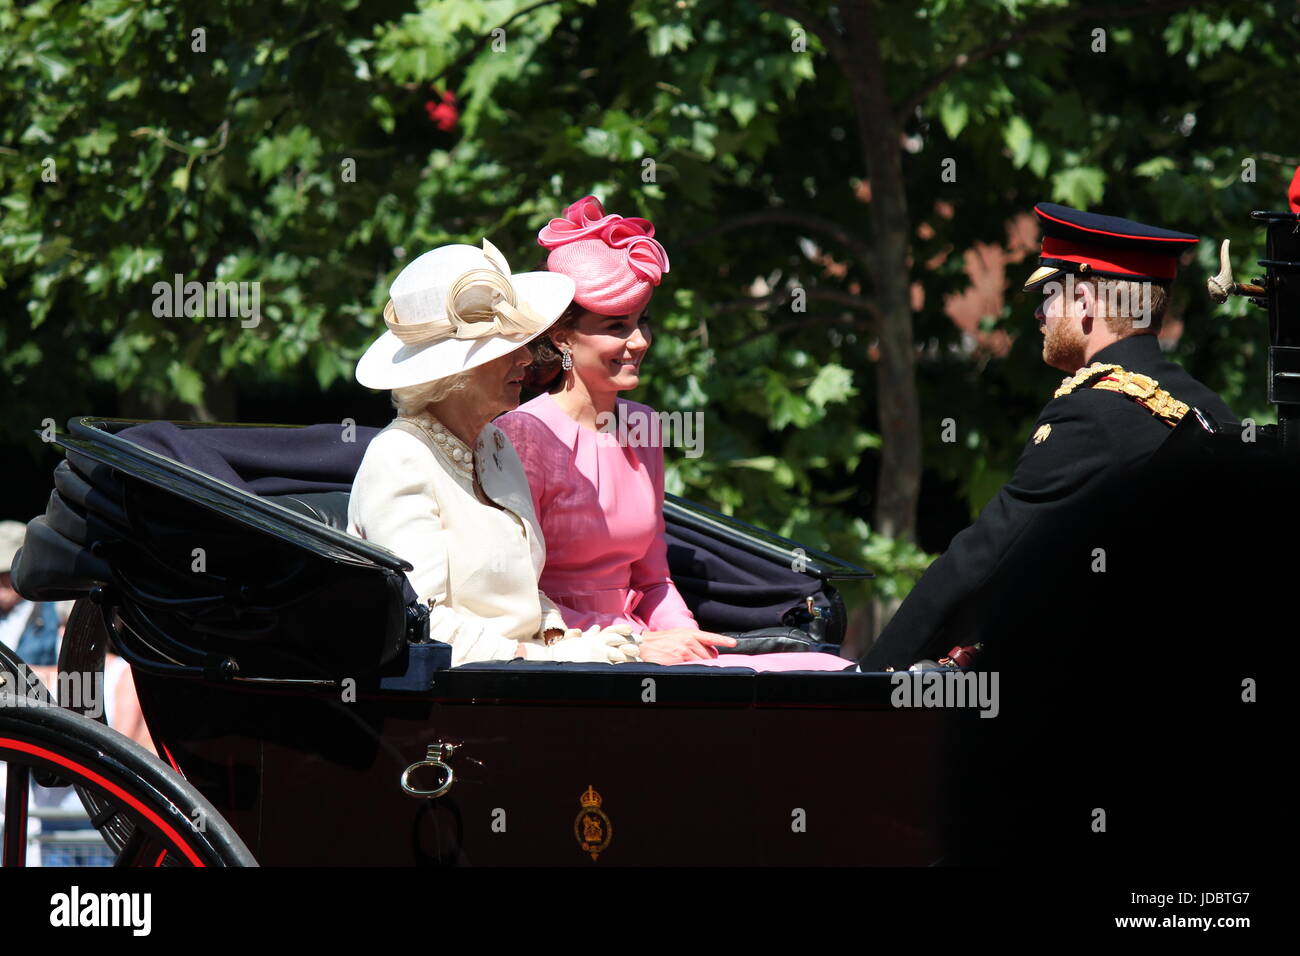 London, England - 17. Juni 2017: Prinz Harry, Kate Middleton und Camilla Parker Bowles in einer offenen Kutsche für die Farbe 2015 die Königinnen, die offiziellen Geburtstag, London, UK. Foto, Foto, Bild, Bild markieren, Redaktion Stockfoto